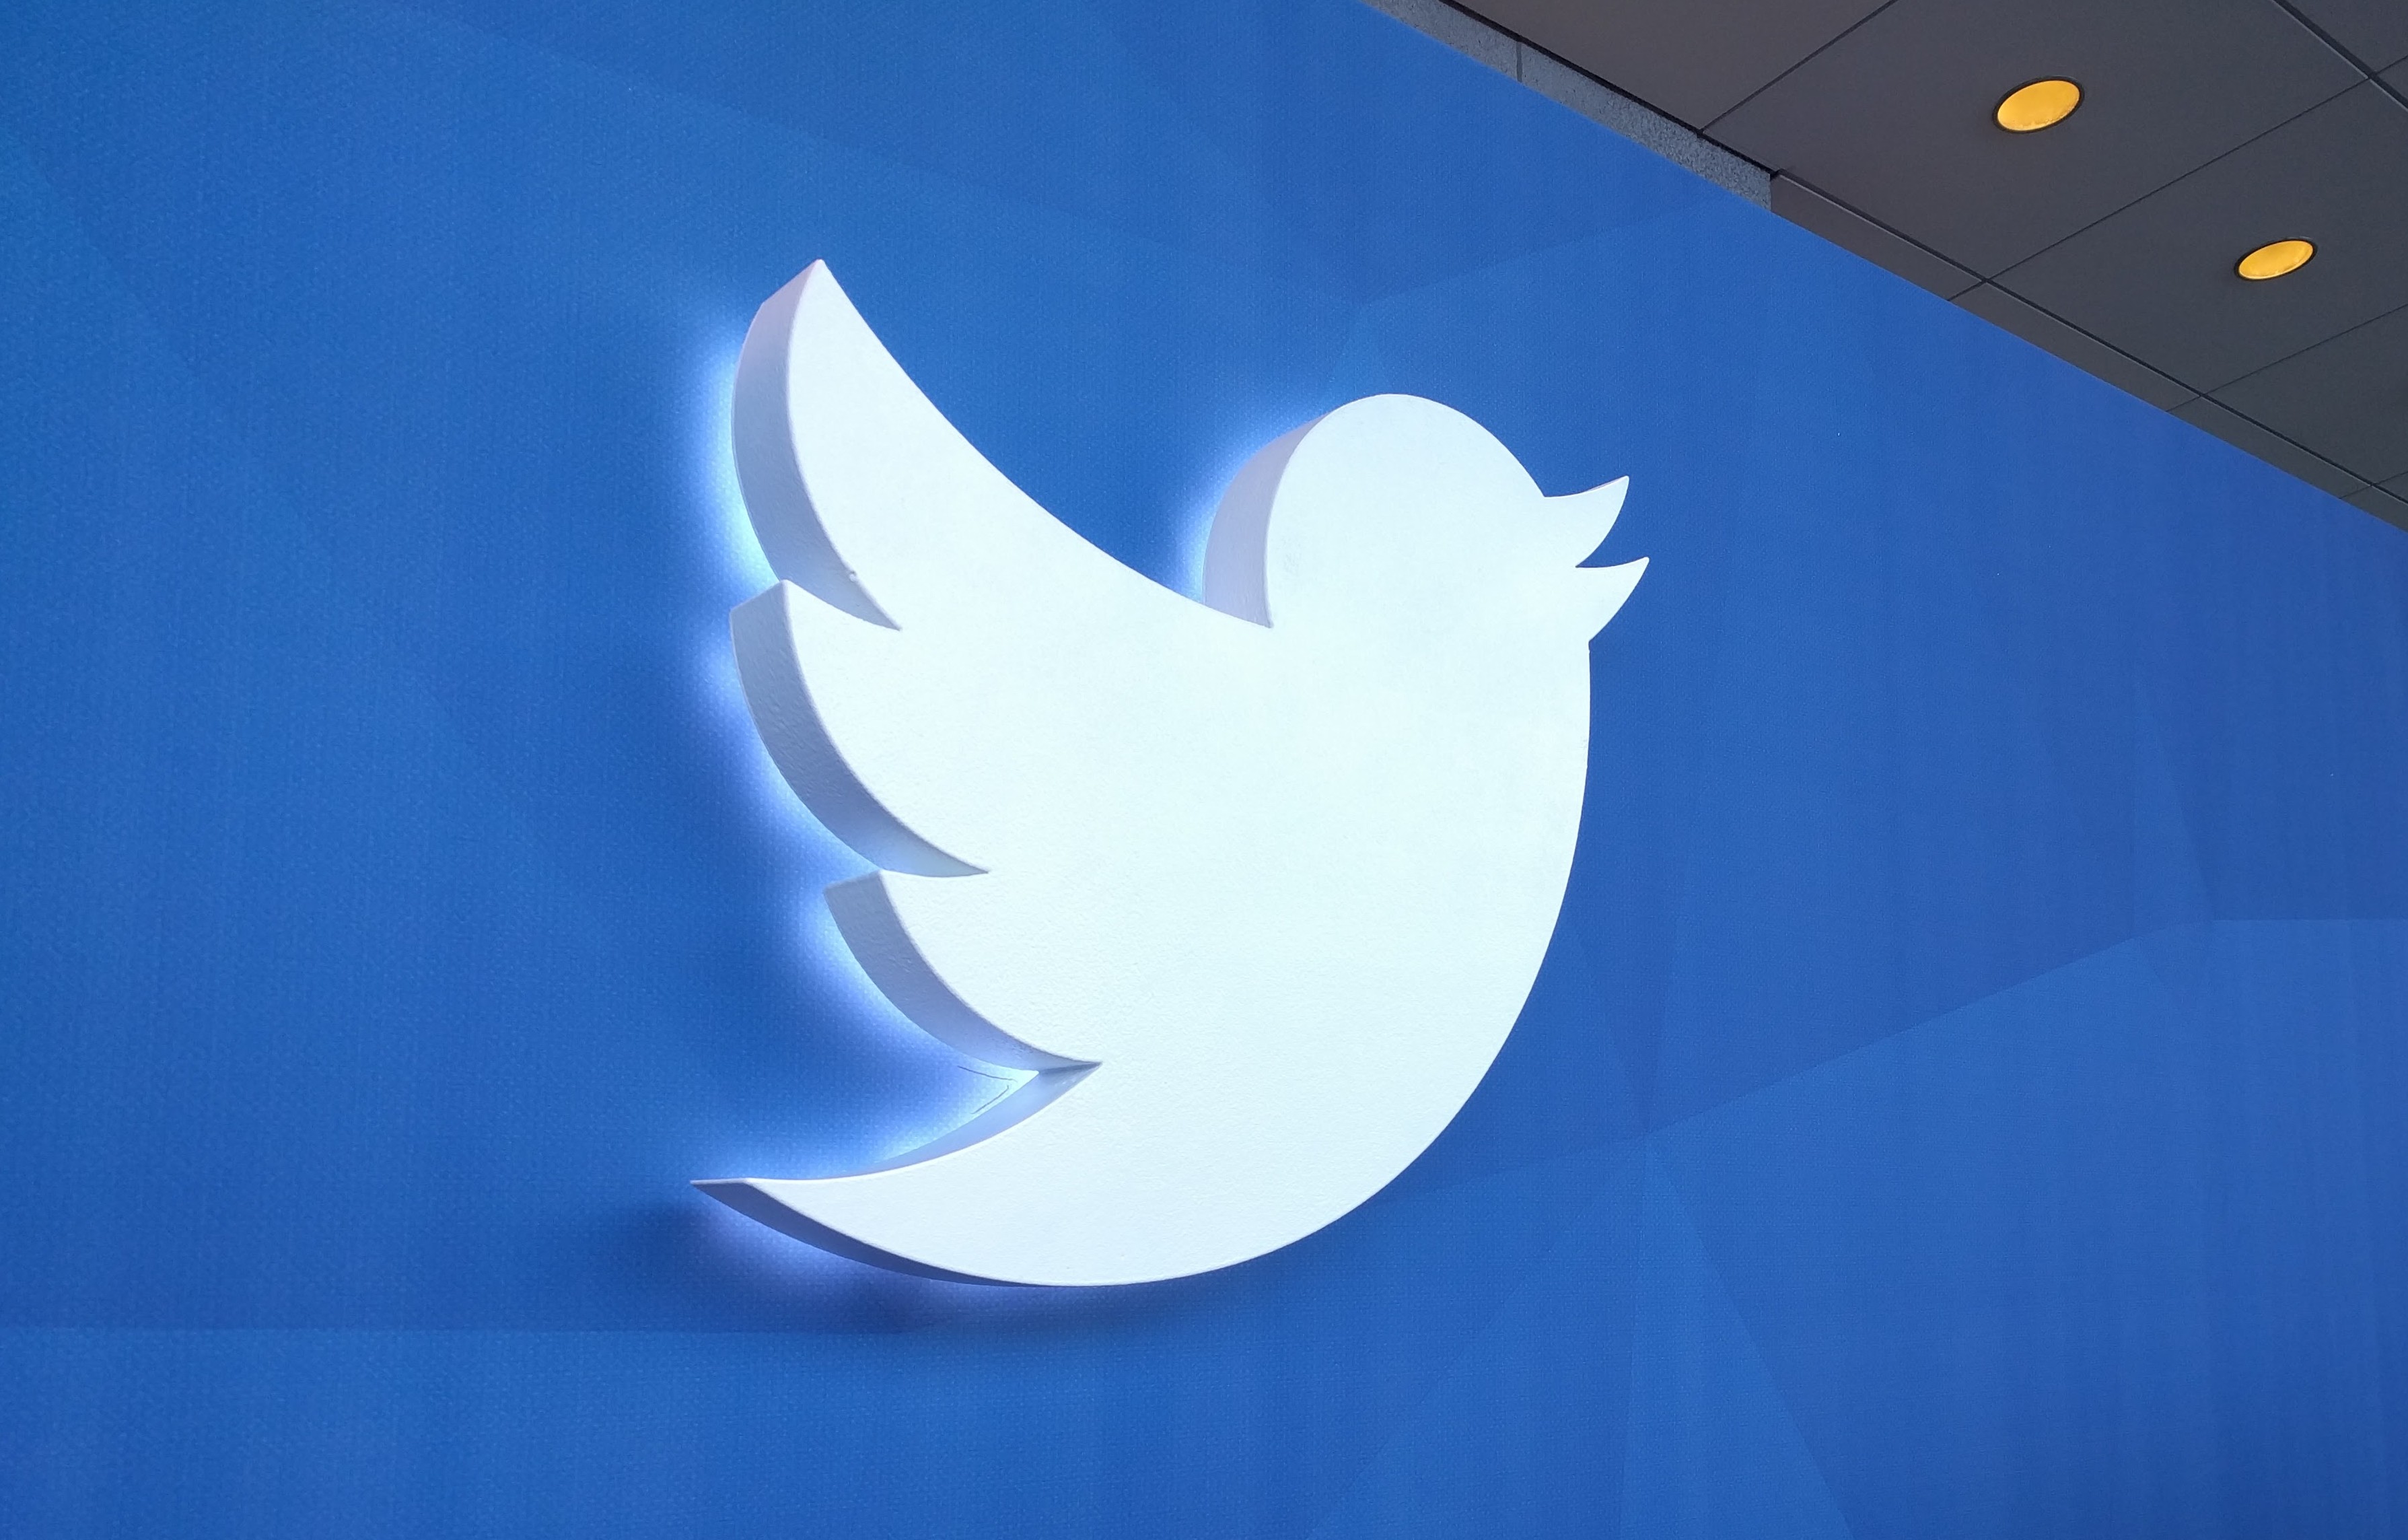 Twitter-Flight-2015-logo-Novet-e1445981910585.jpg